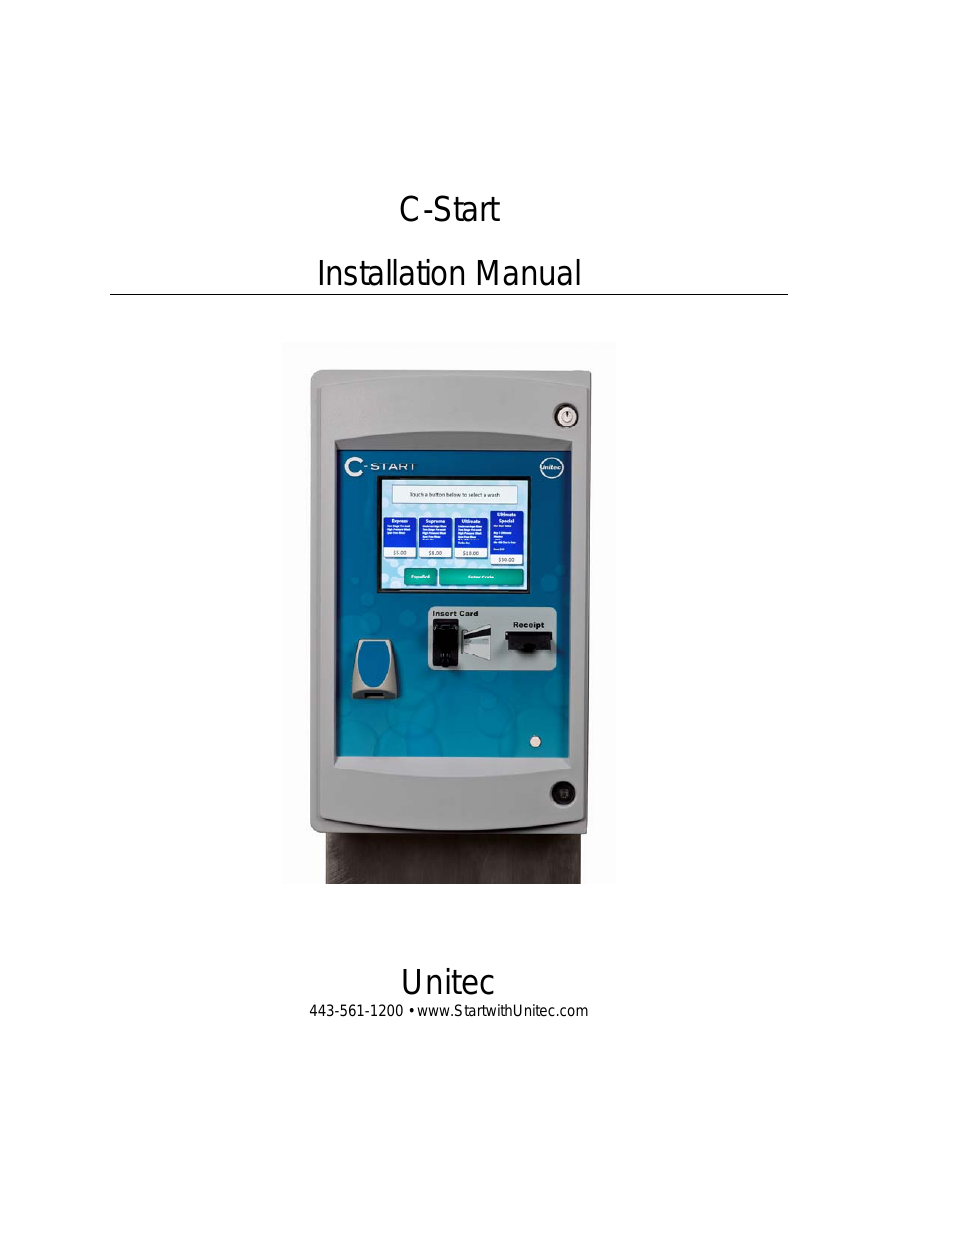 C-Start Installation Manual